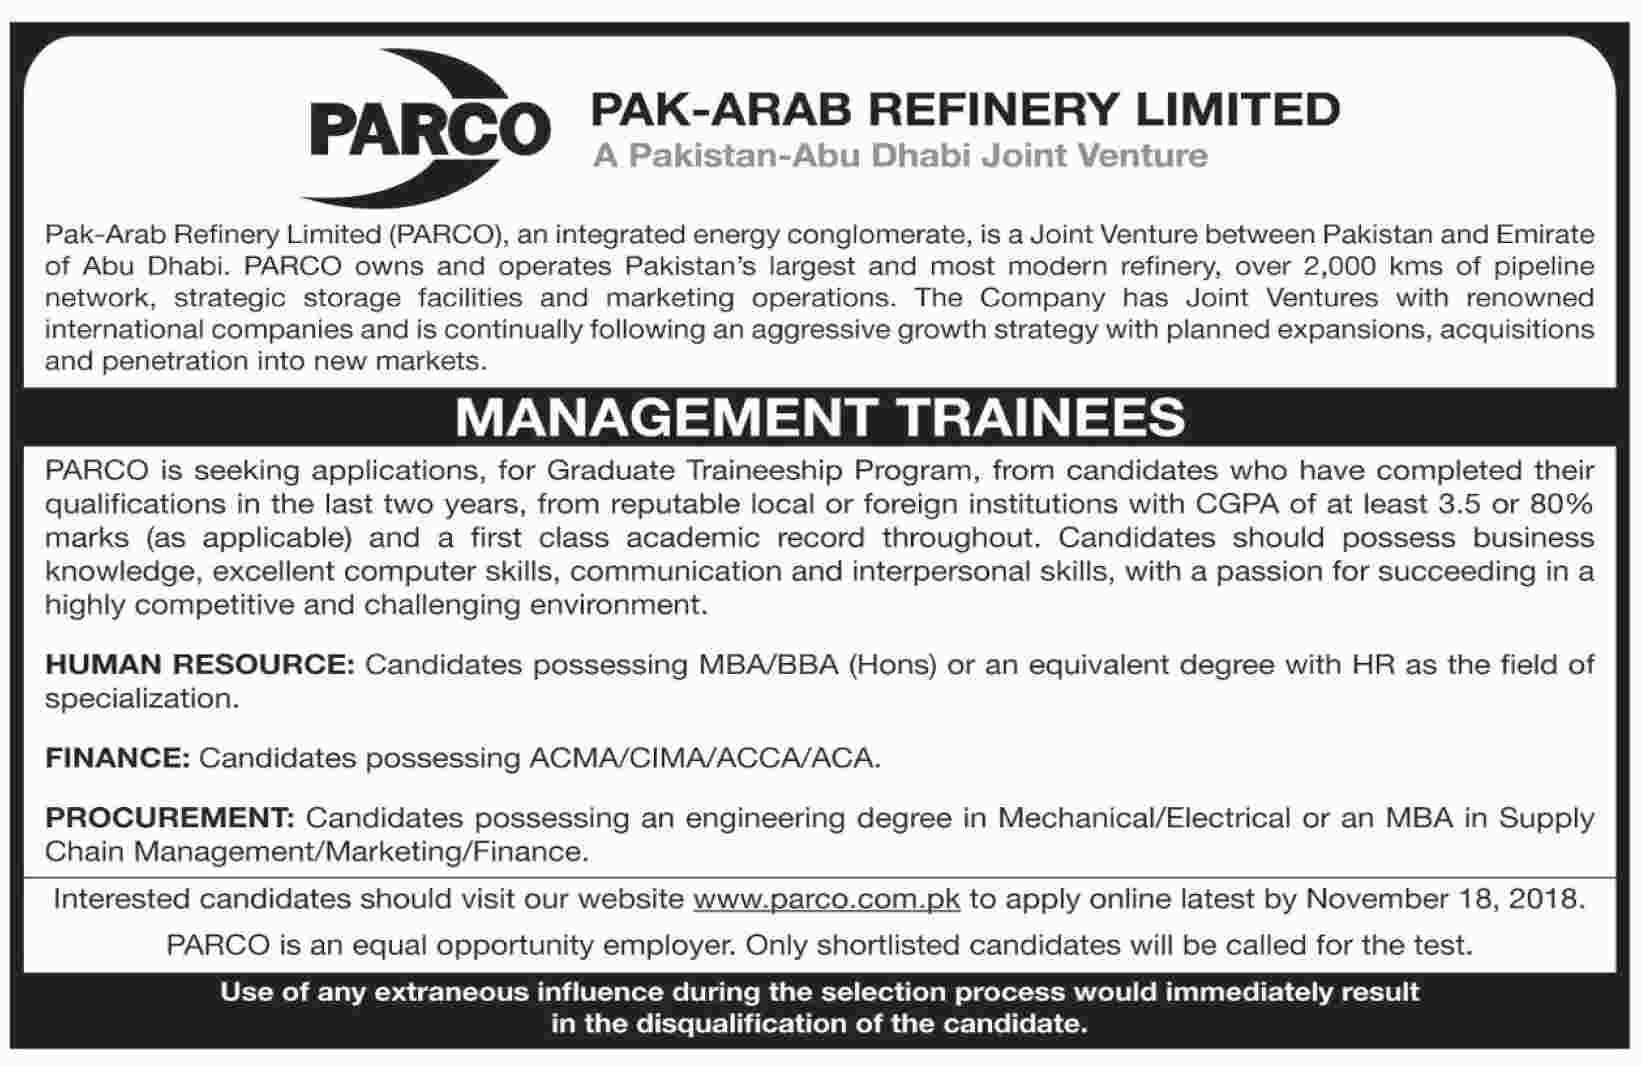 Parco Management Trainee Program